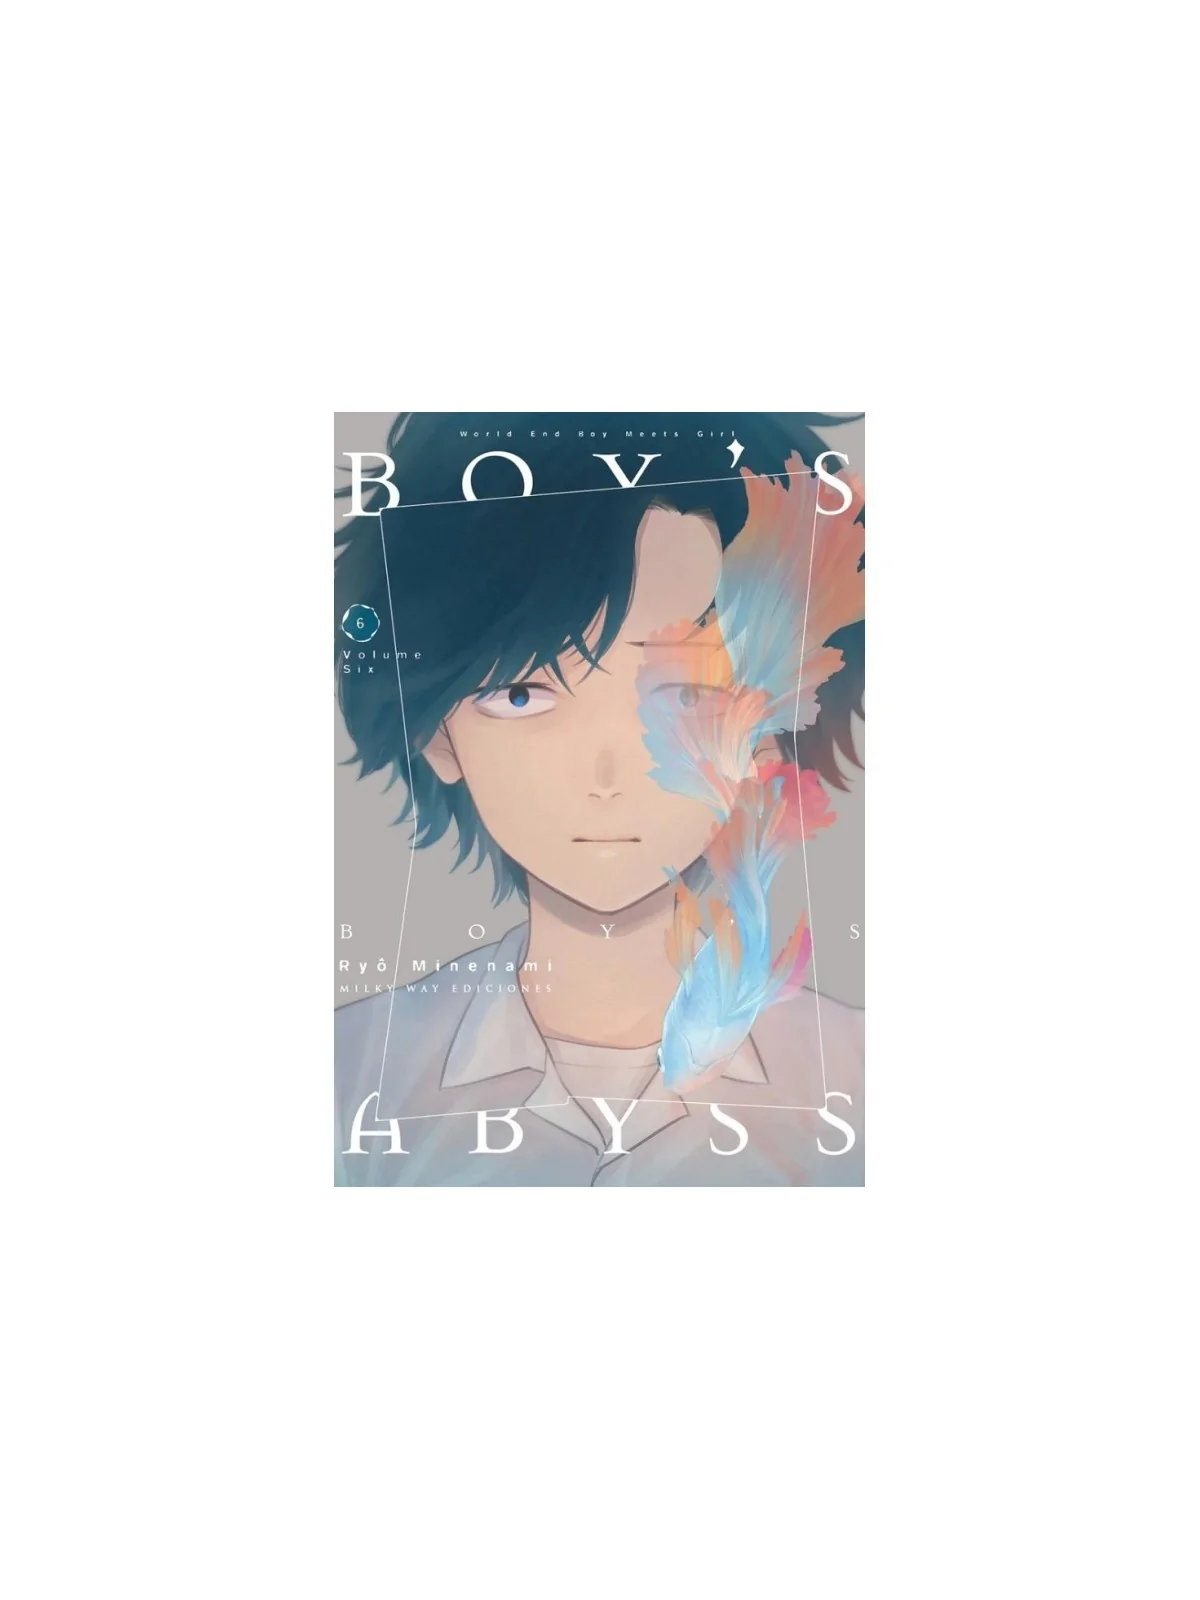 Comprar Boy's Abyss 06 barato al mejor precio 8,55 € de Milky Way Edic